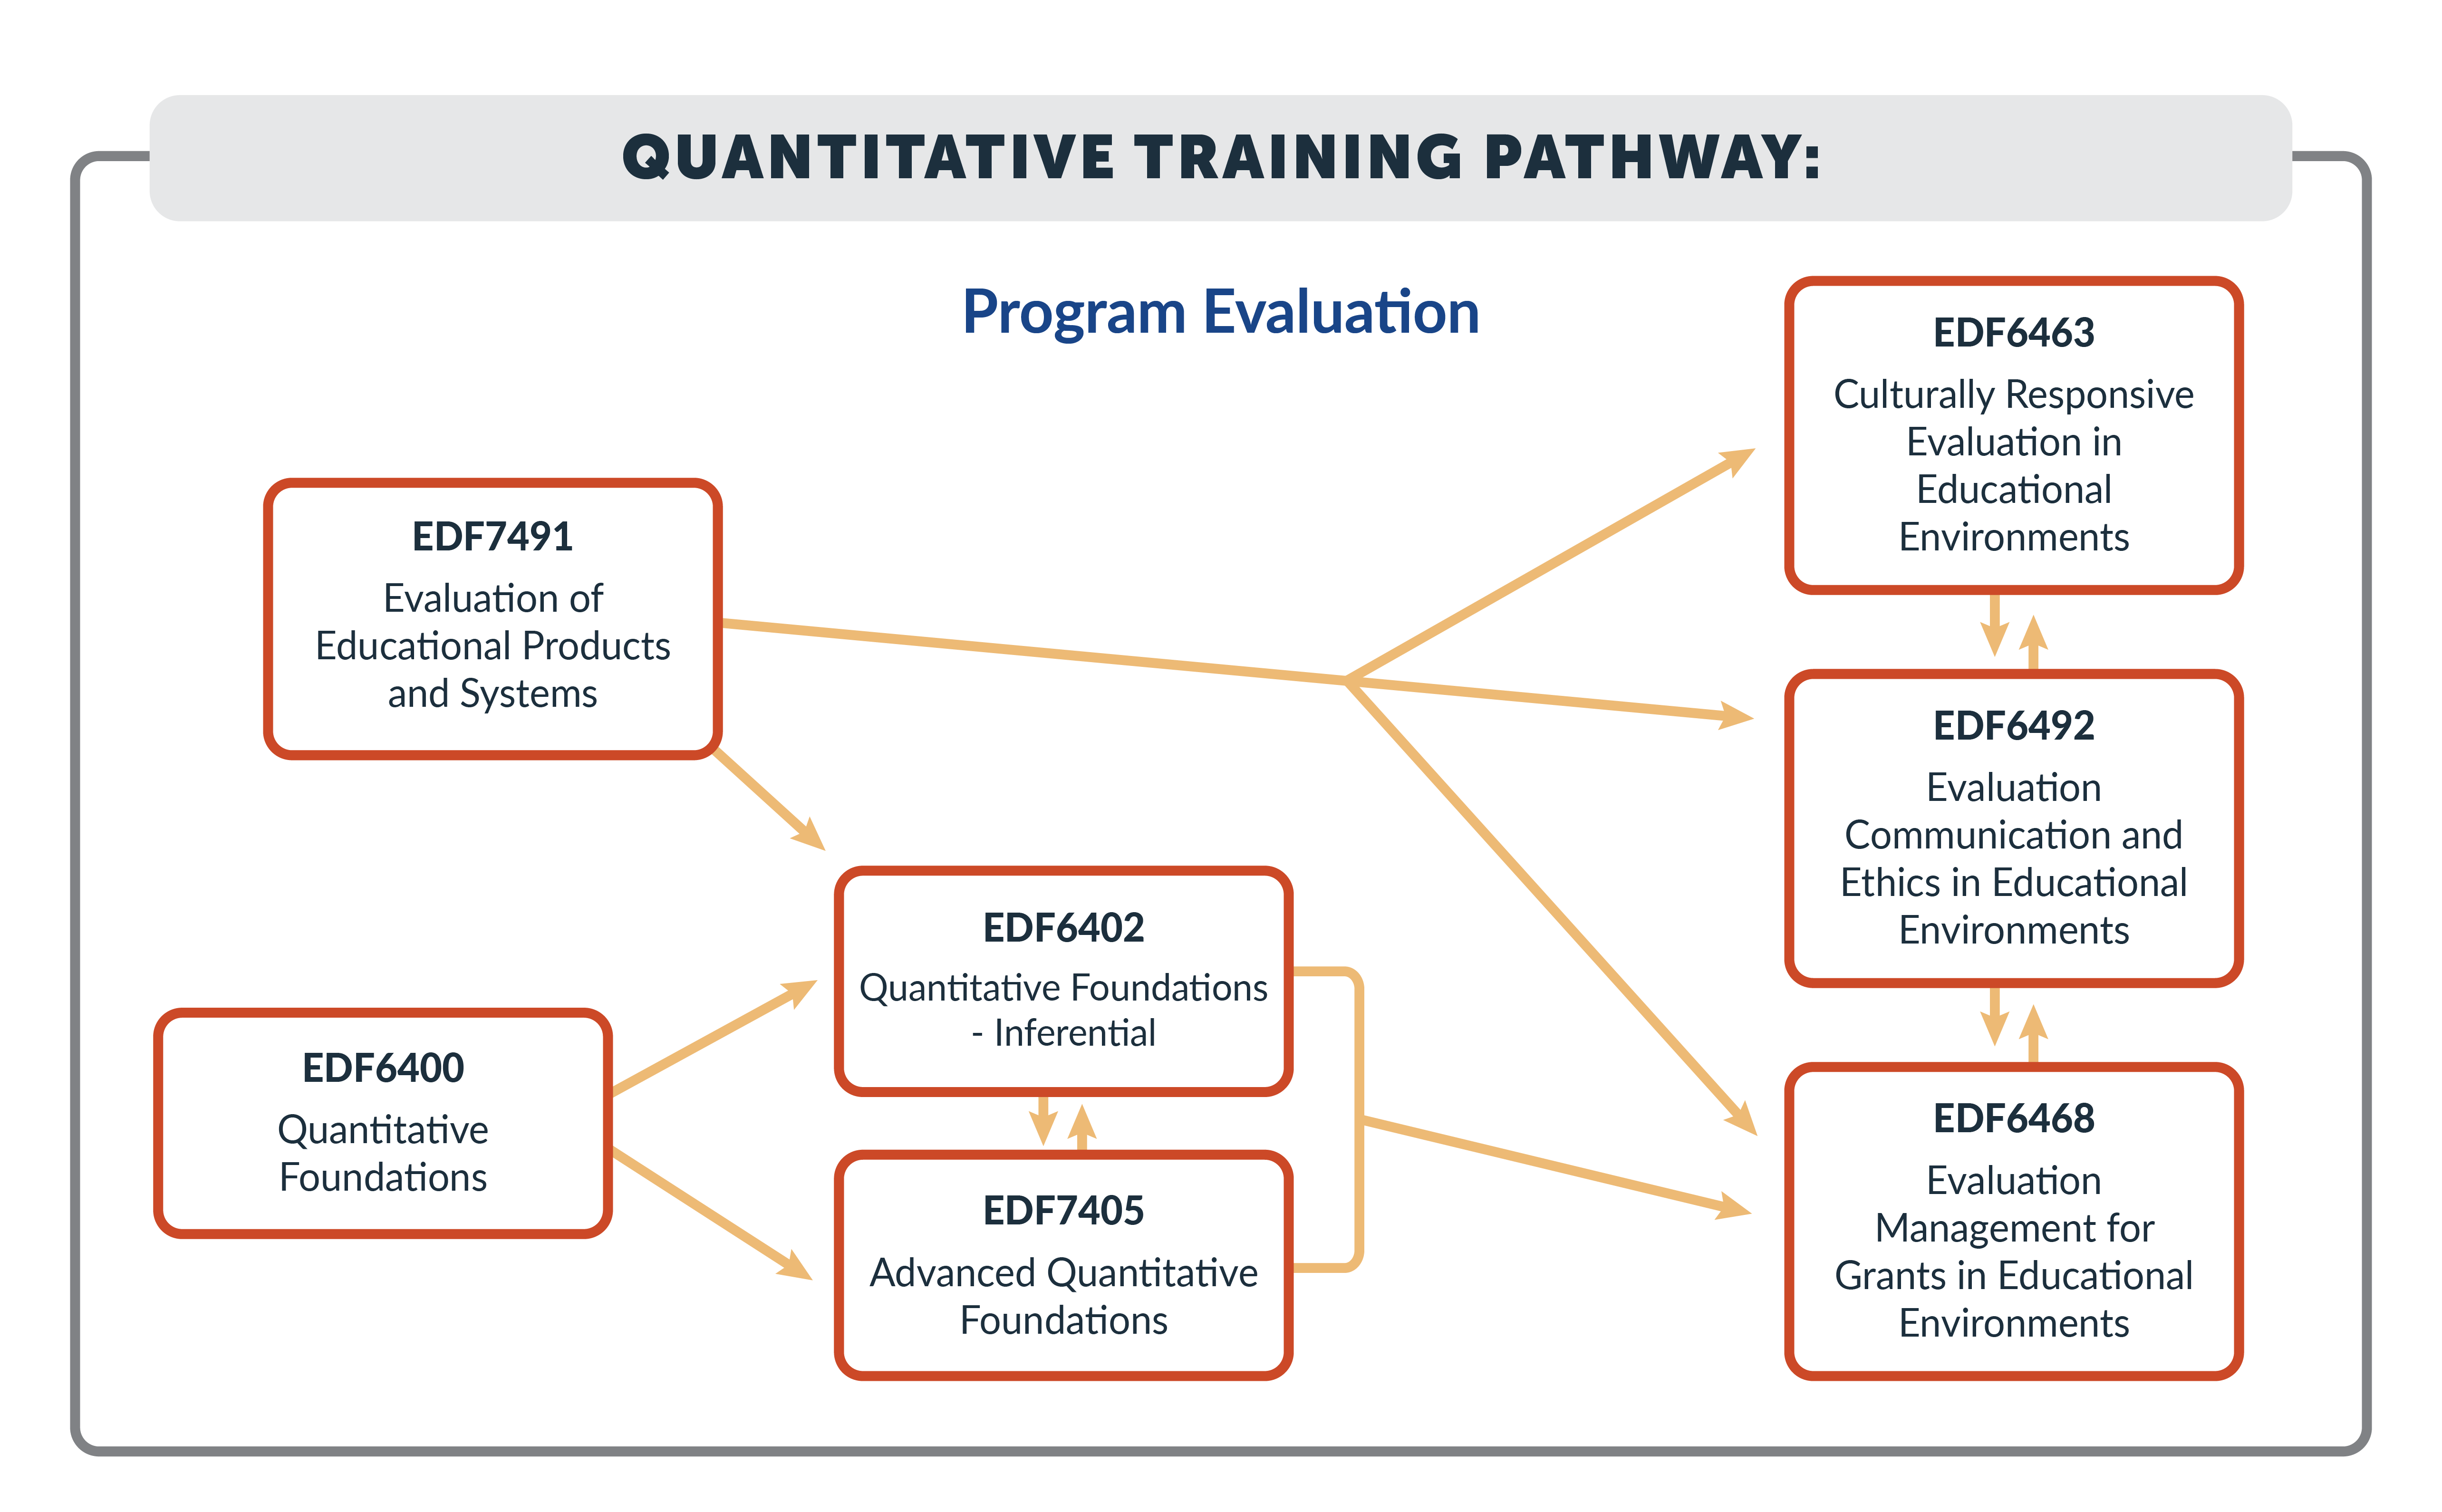 Quantitative Training Pathway - Program Evaluation